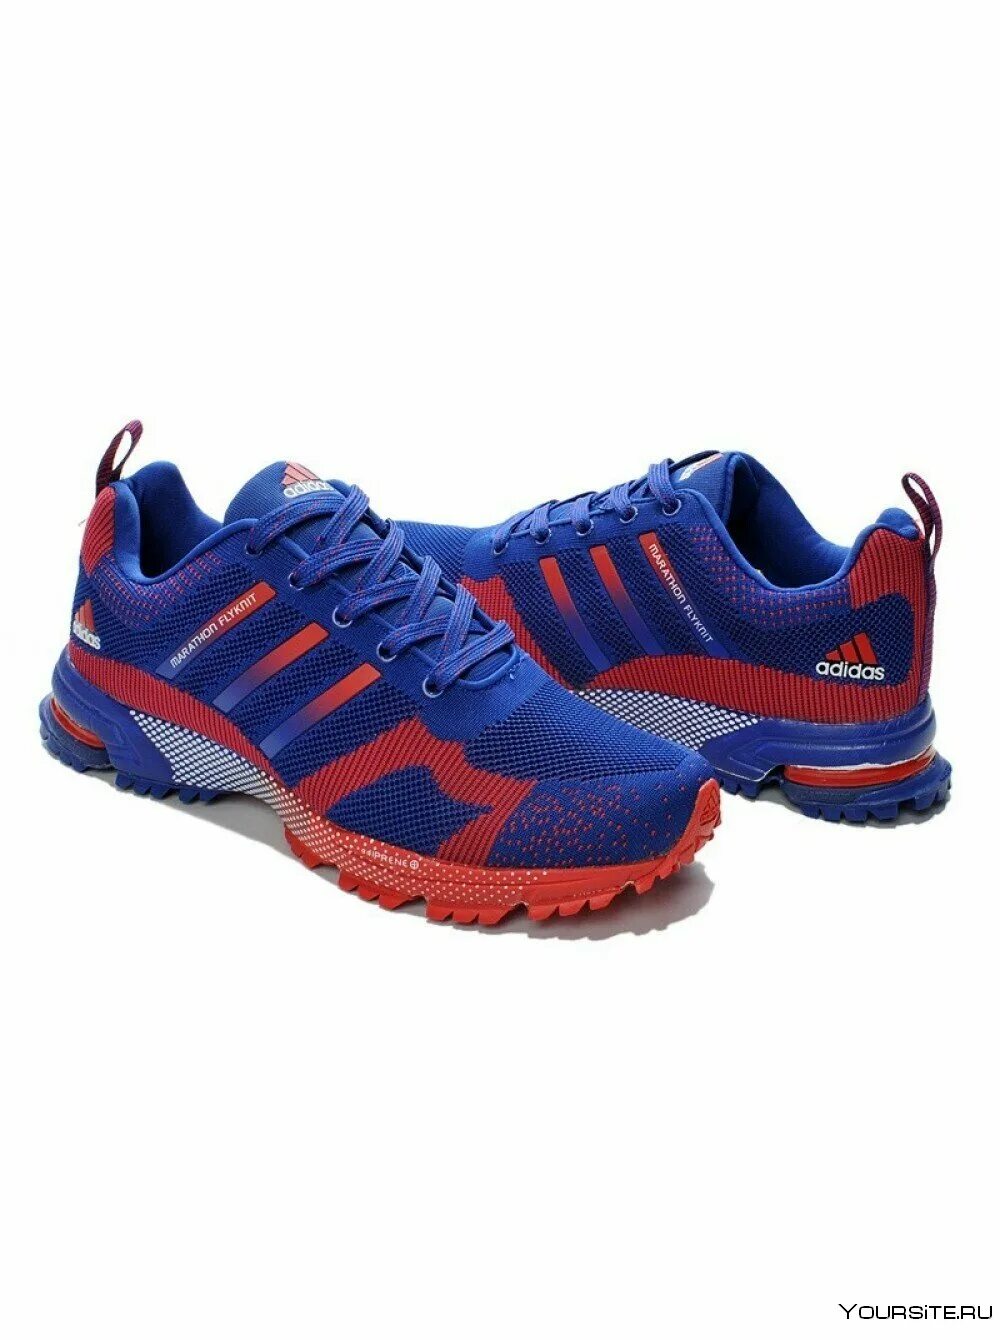 Обувь адидас кроссовки. Adidas Marathon Flyknit. Кроссовки адидас мужские a243-4. Adidas Marathon Flyknit Blue. Adidas Marathon Flyknit Blue/Red.